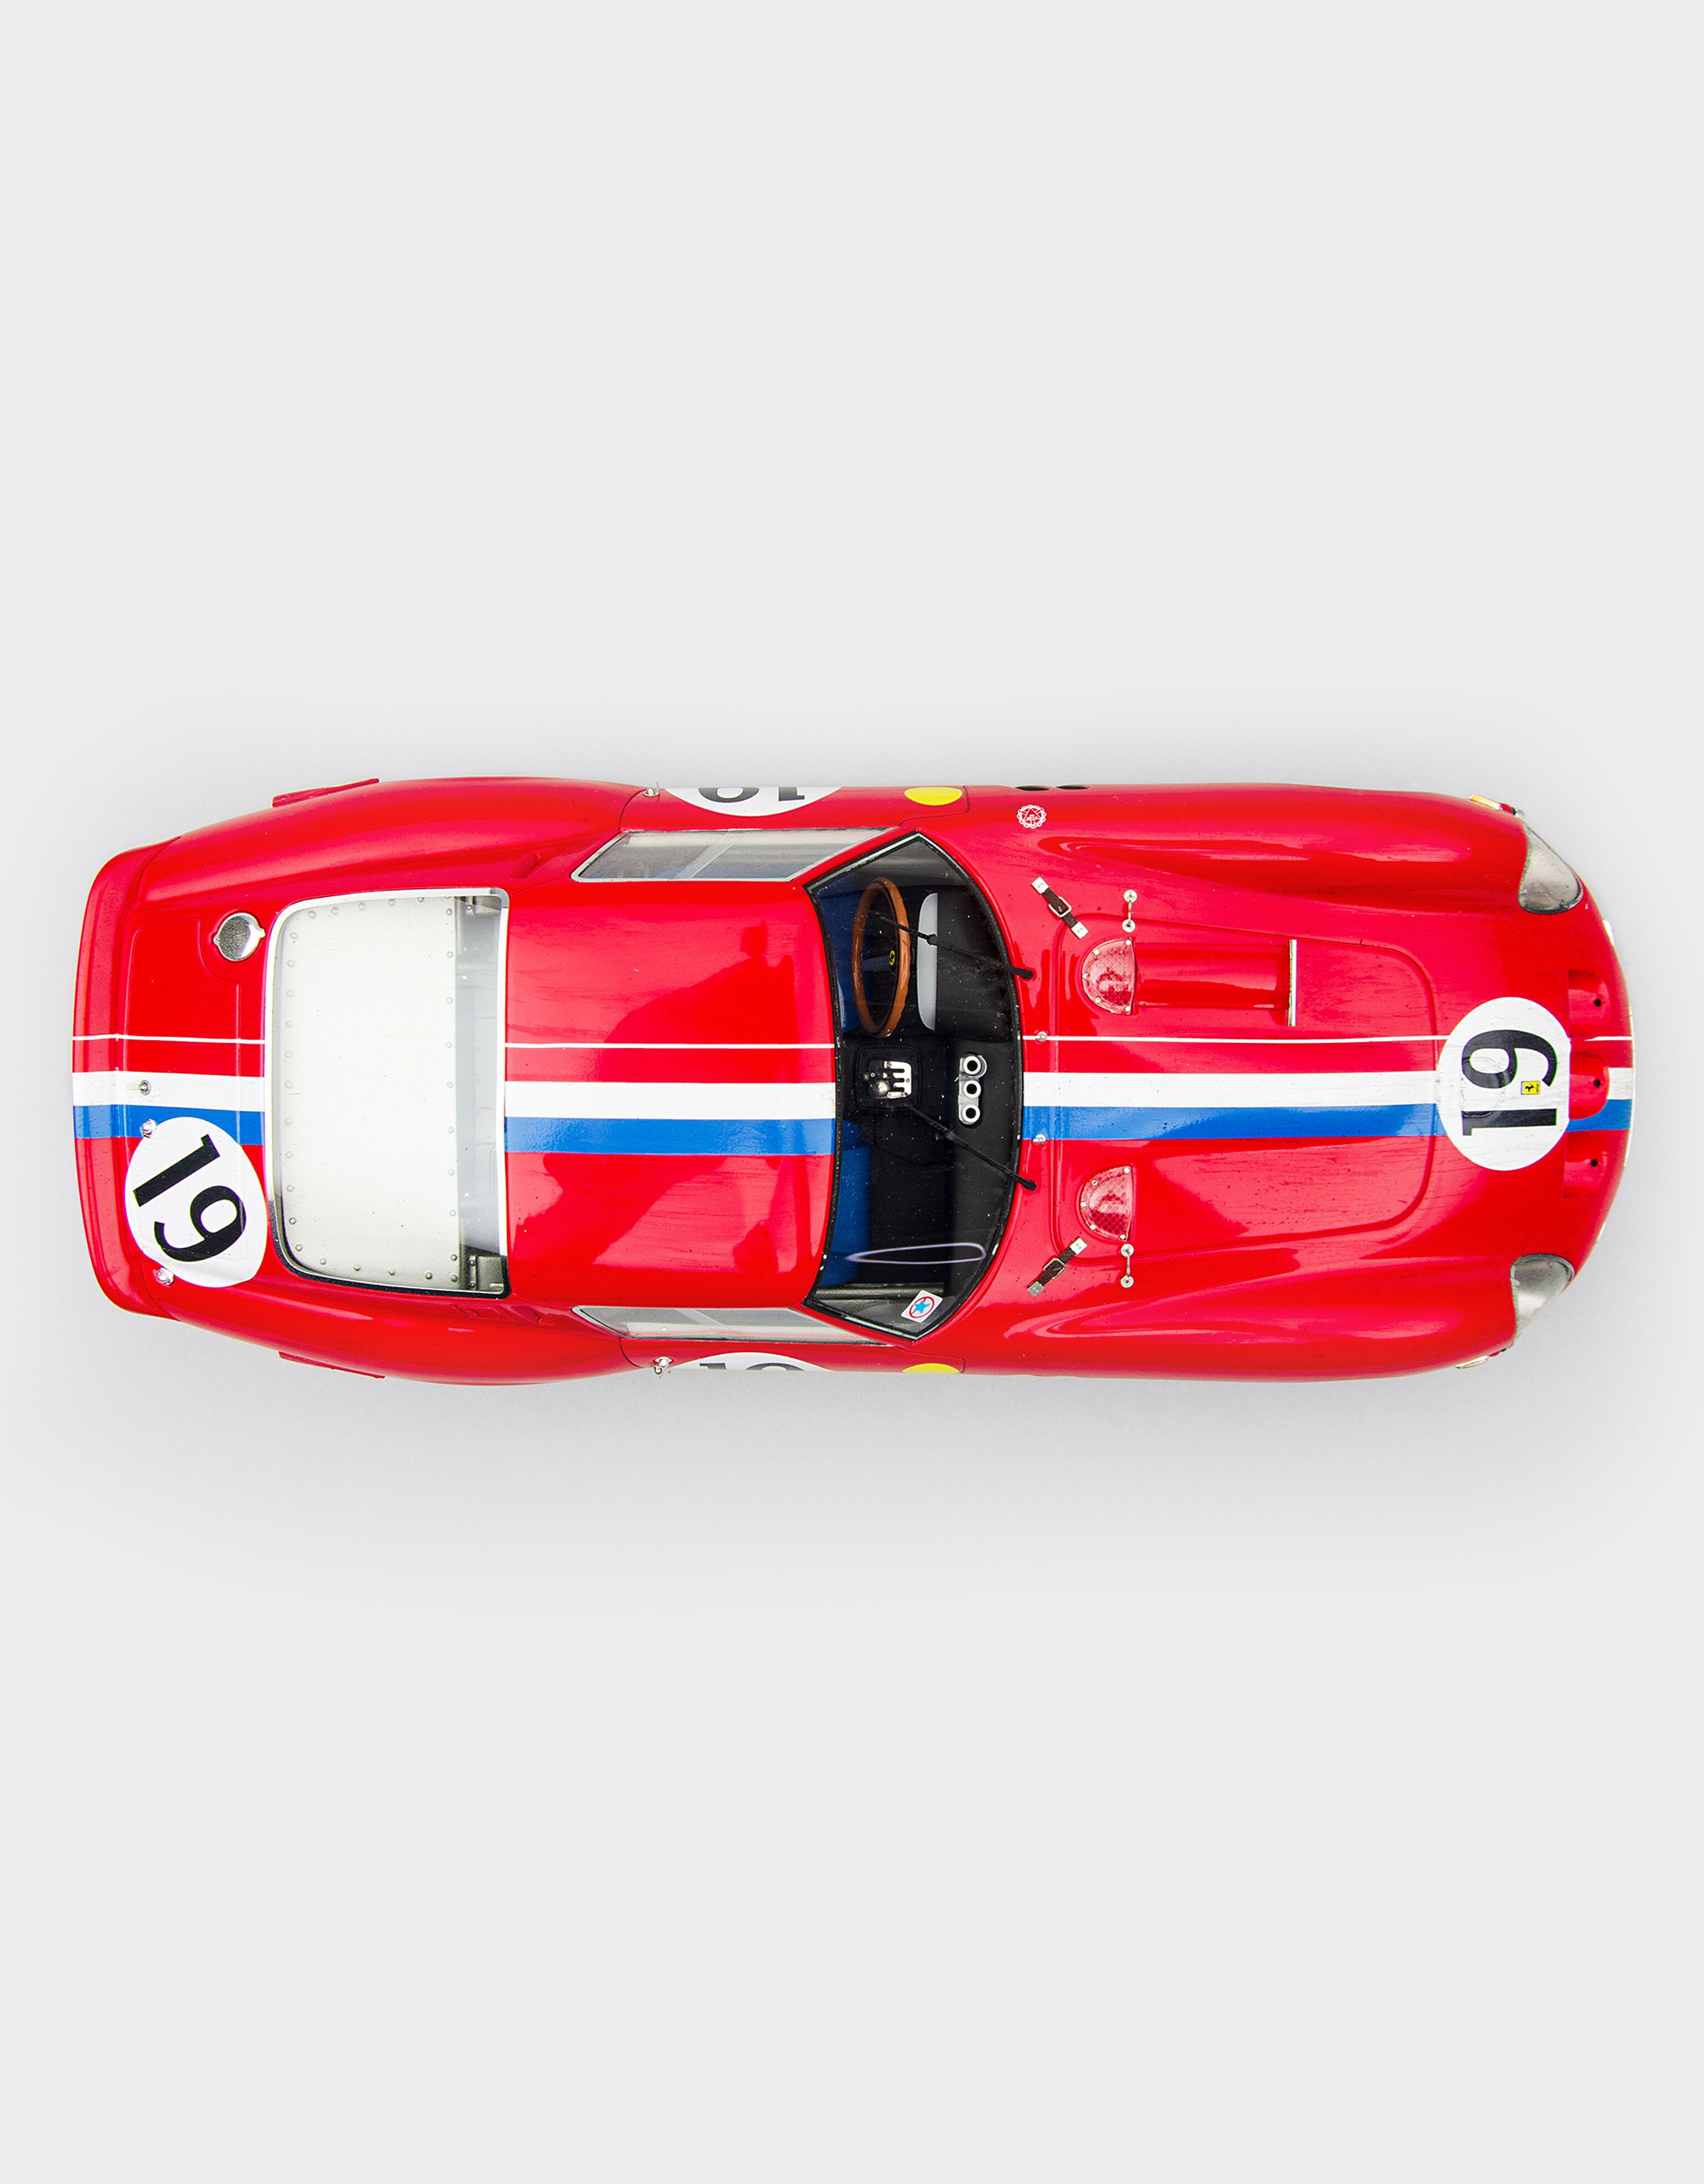 Ferrari Ferrari 250 GTO 1962 “Race weathered” Le Mans in 1:18 scale Rosso Corsa F0893f